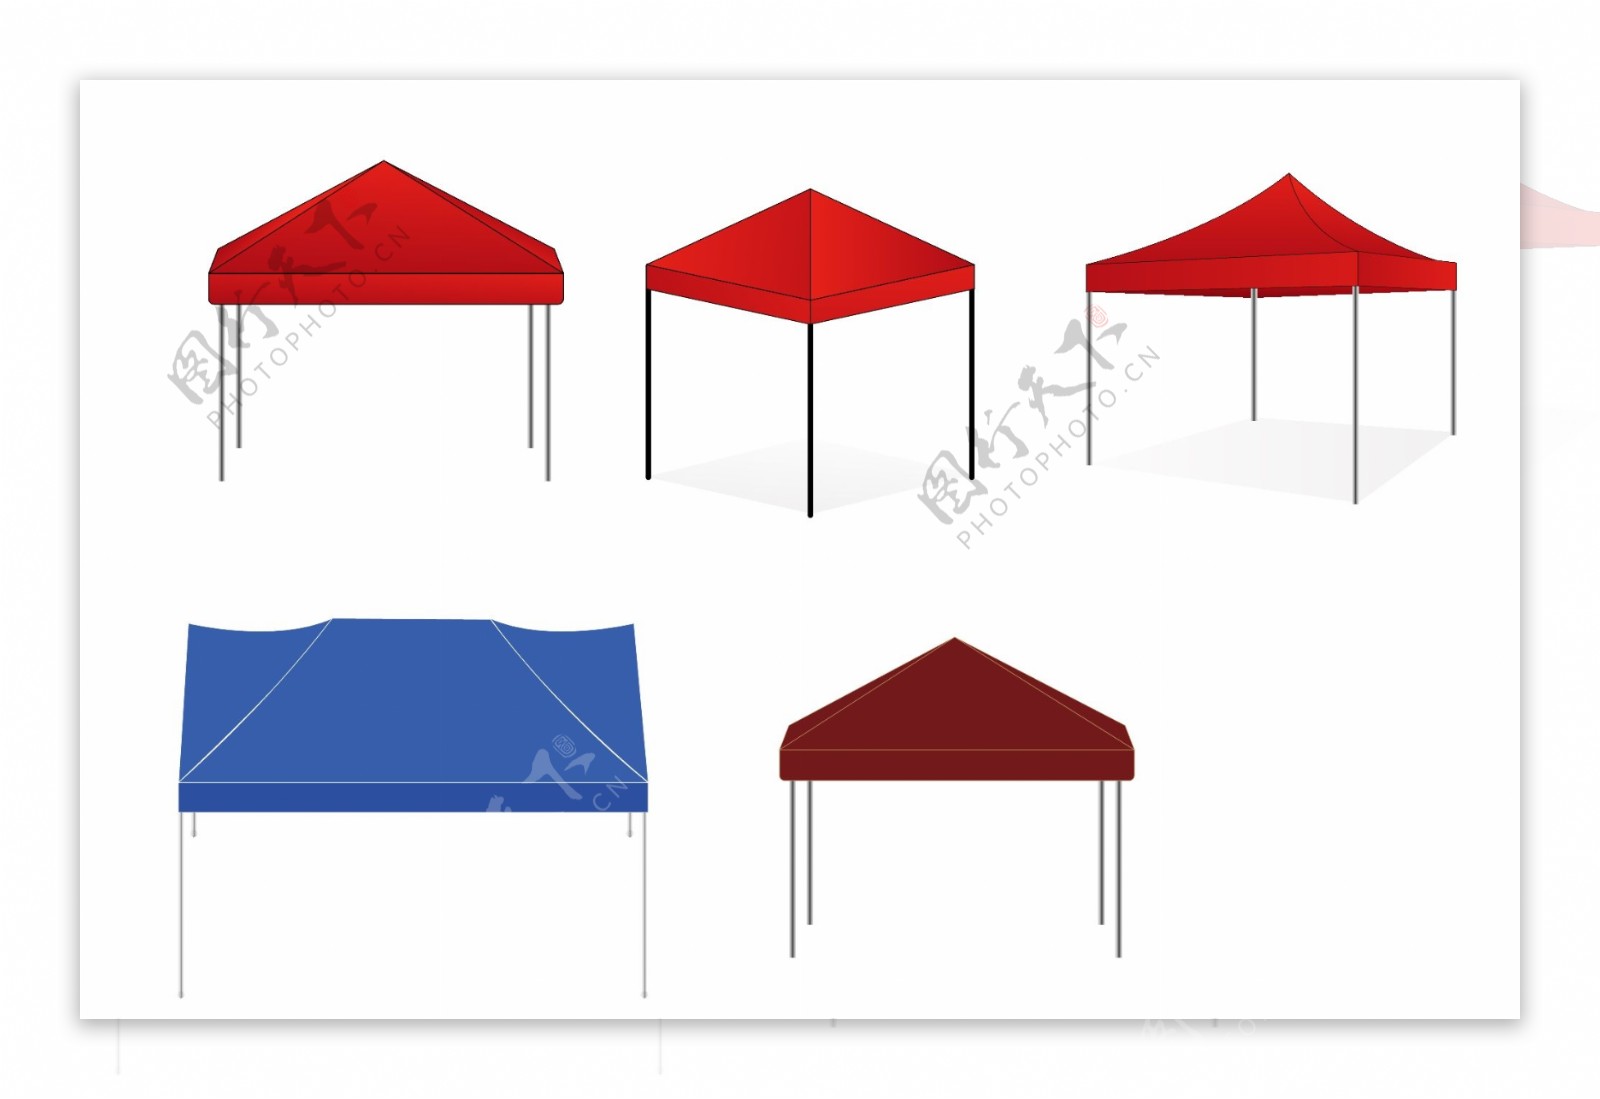 市集活动用帐篷雨伞遮阳伞矢量